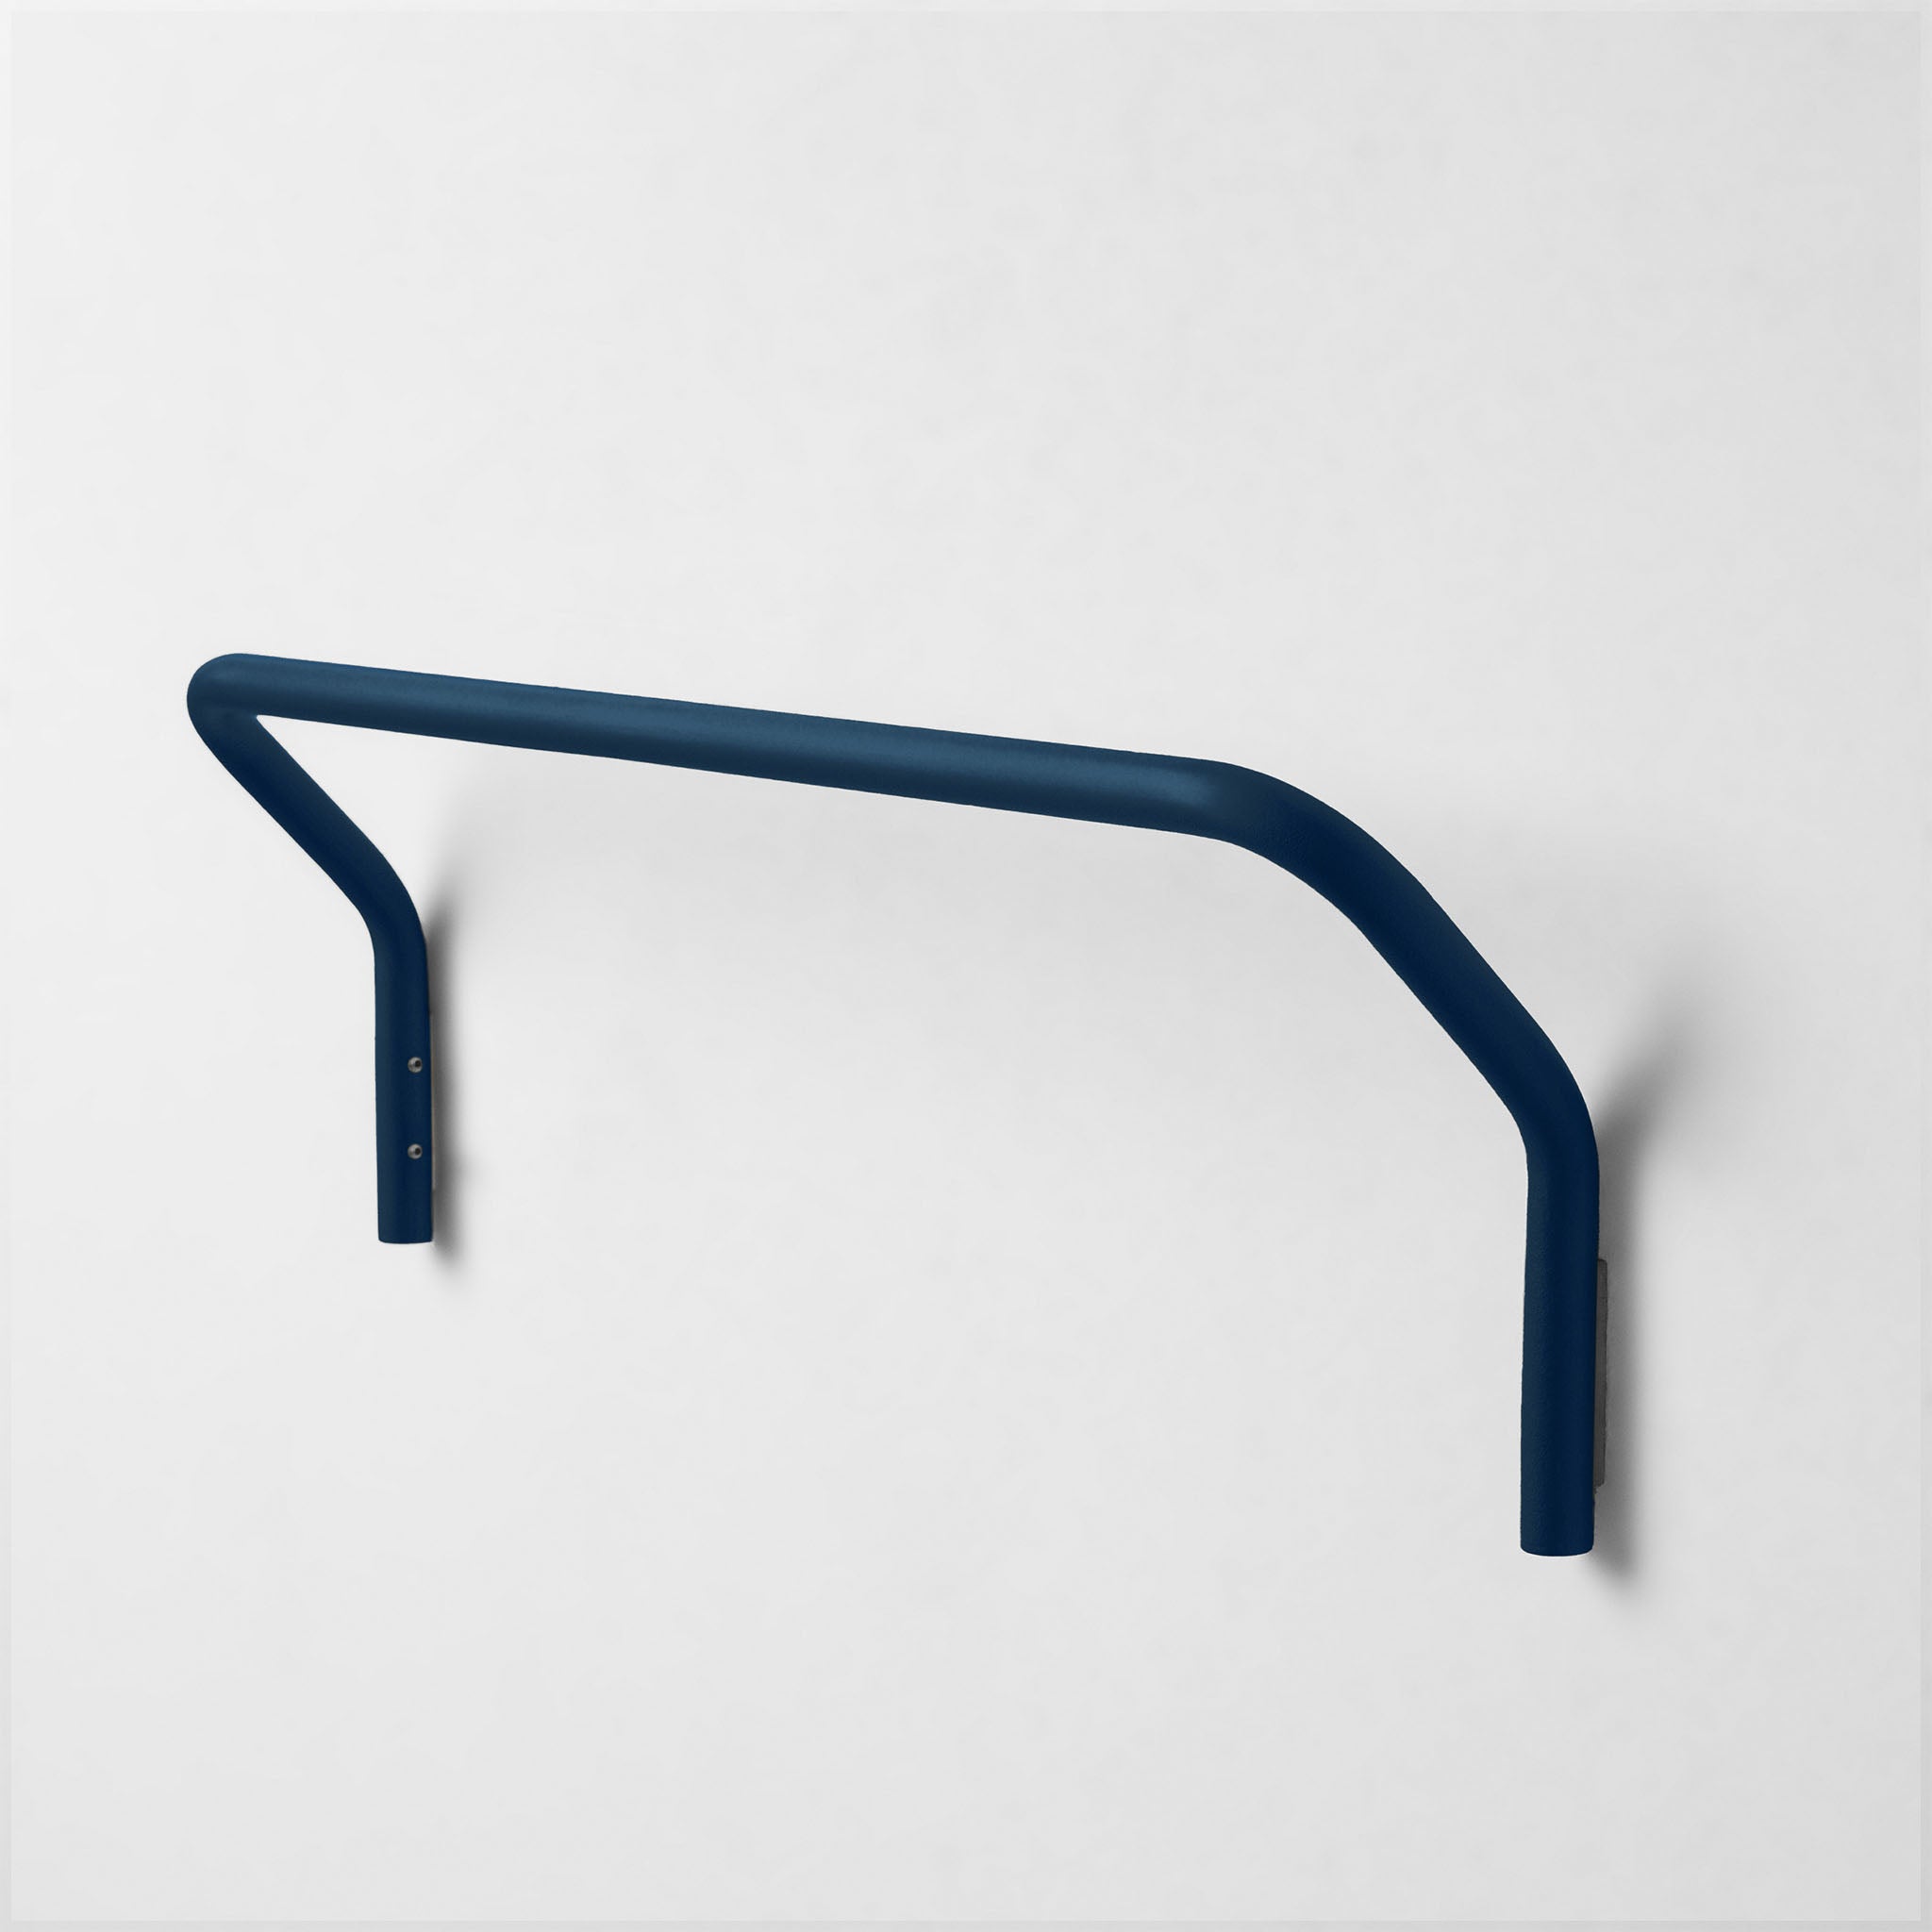 Positano wall towel holder - Midnight Blue